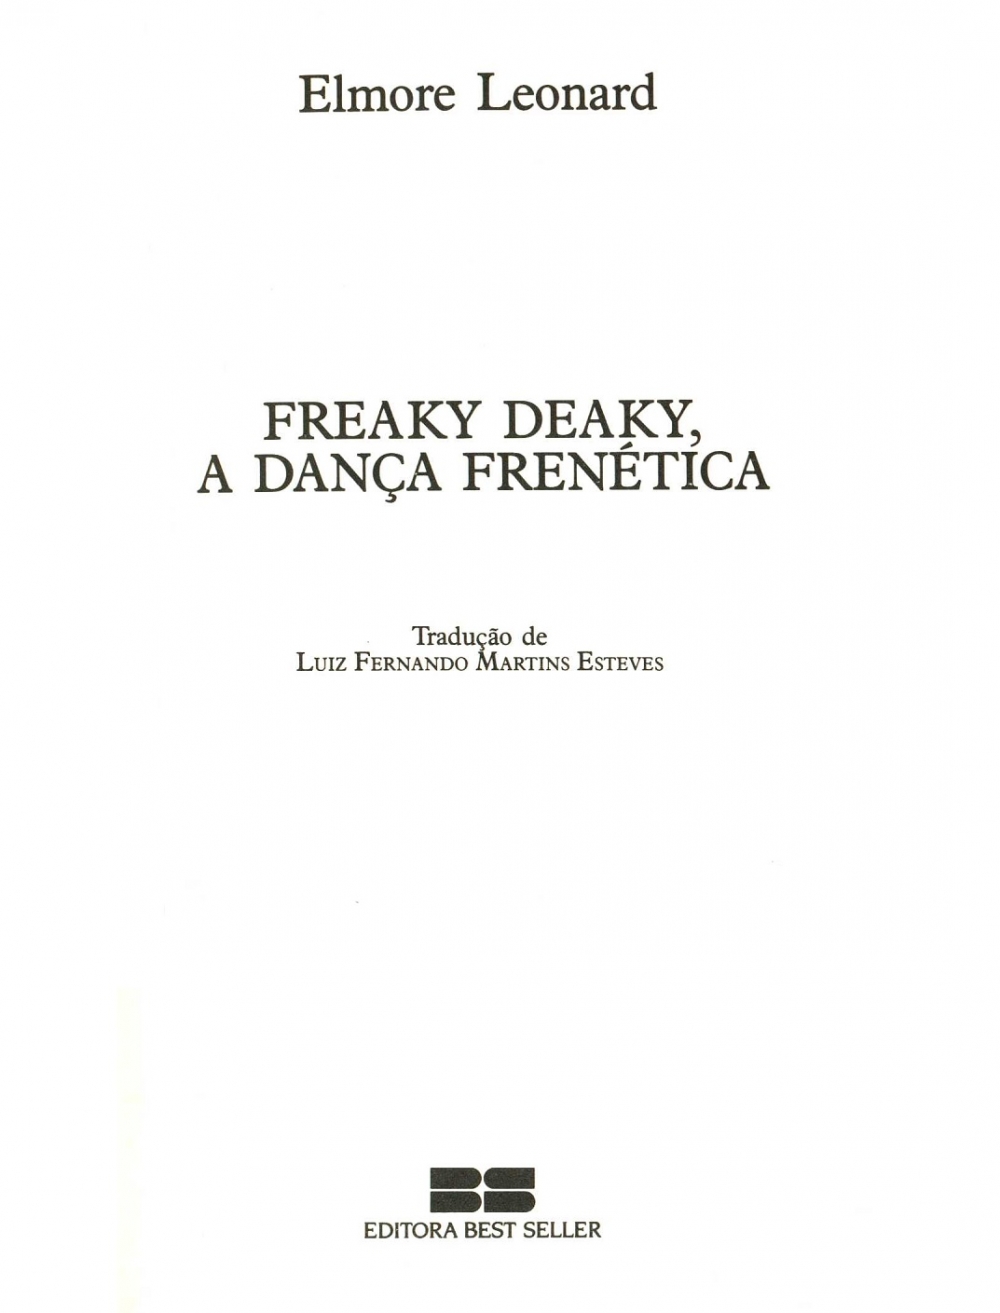 Freaky deaky, a dança frenética